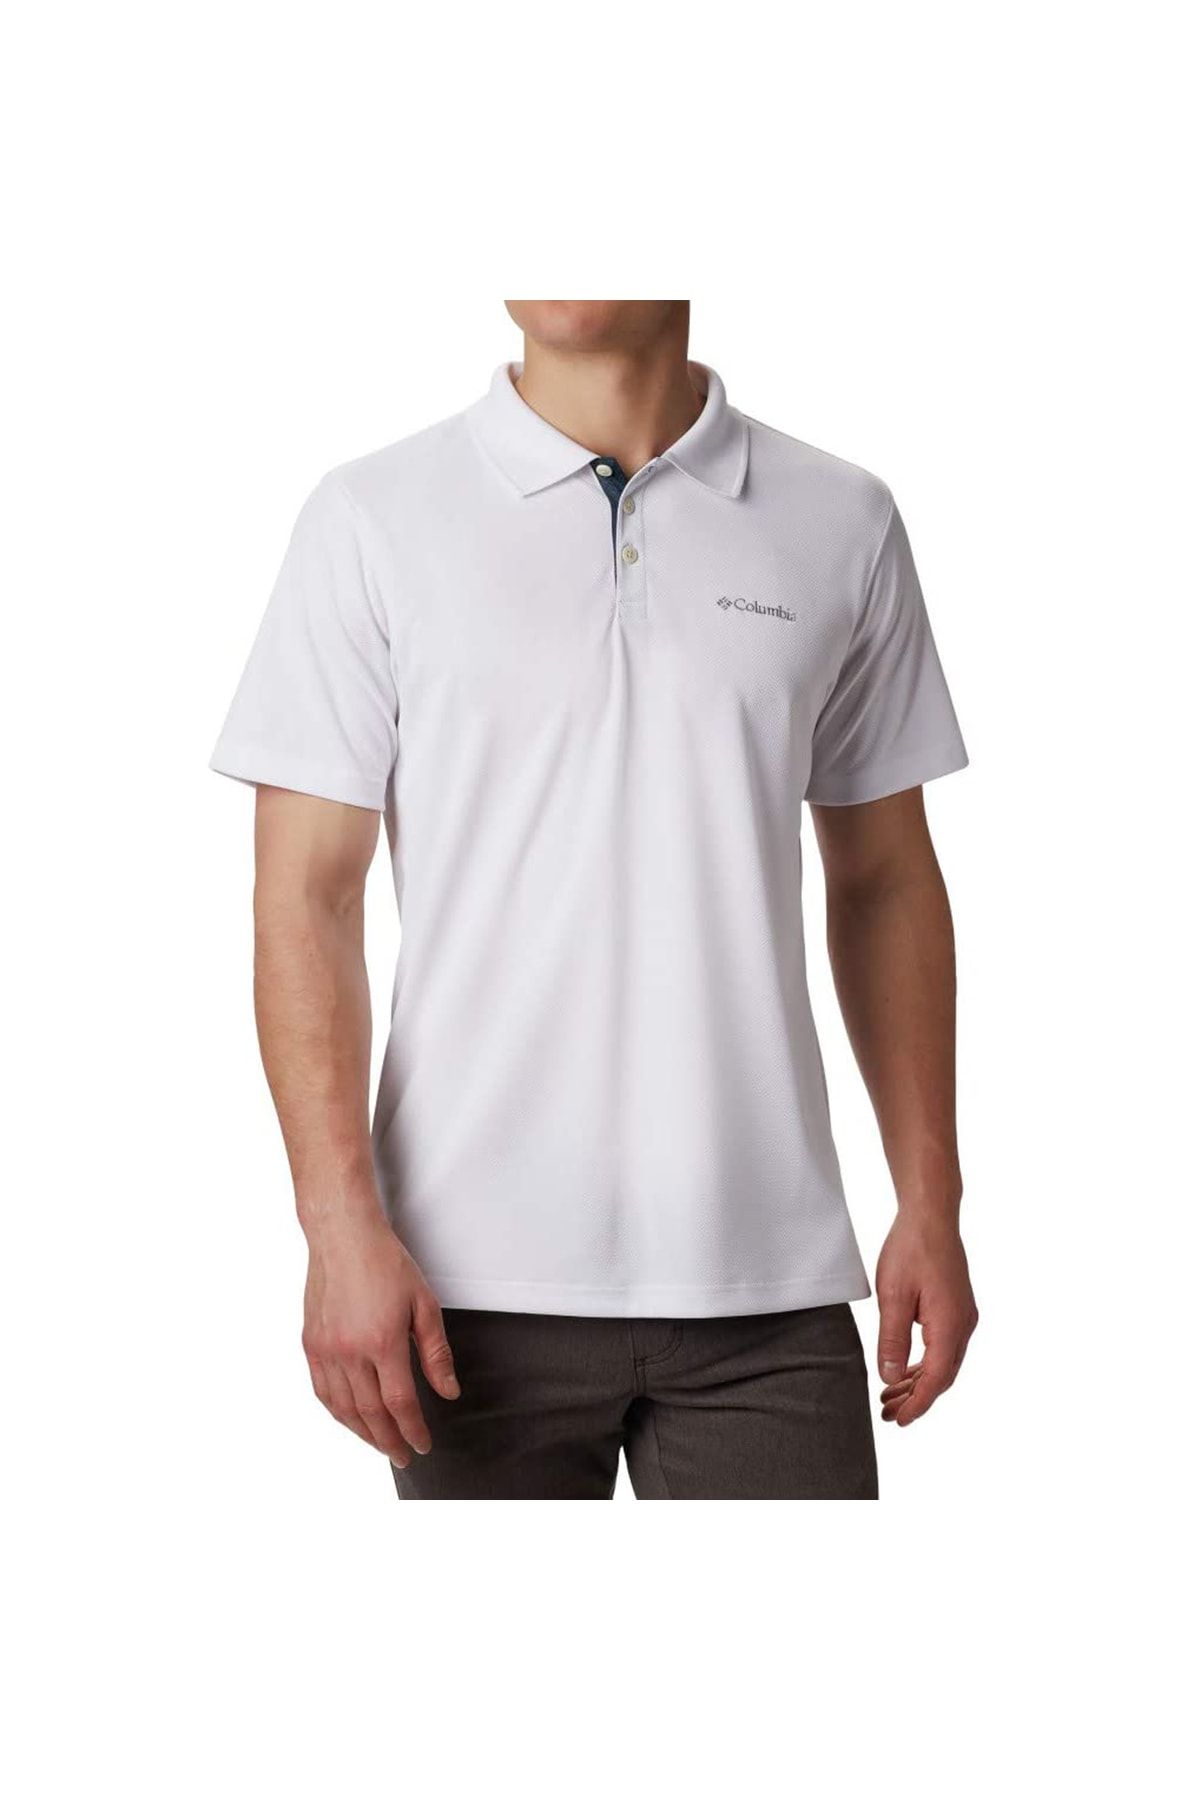 Columbia Utilizer Erkek Beyaz Outdoor Polo T-shirt Am0126-100